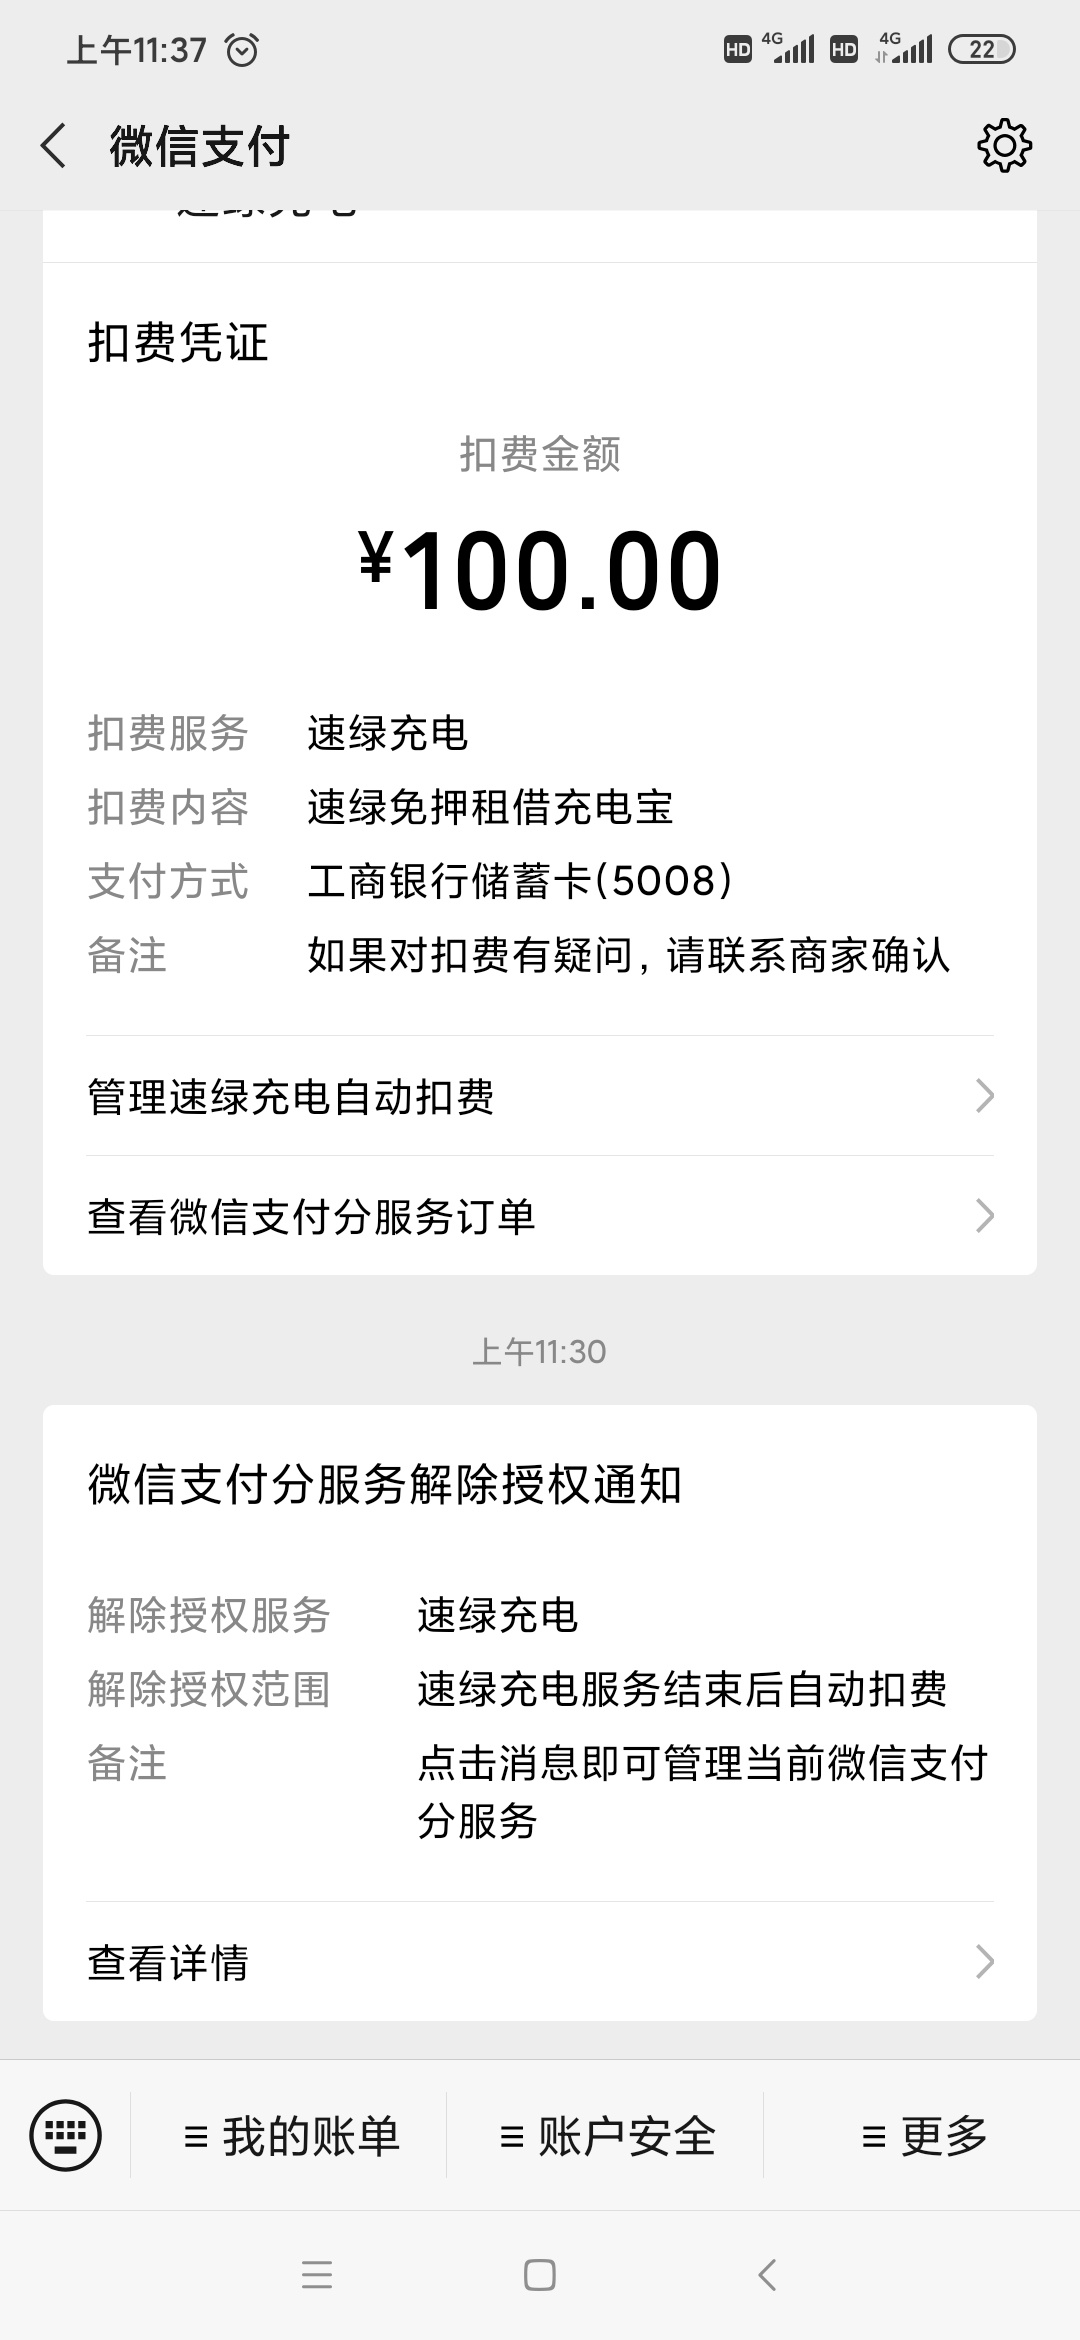 在鑫悦荟ktv扫码借了个充电器挨扣了100块346 / 作者:大龙大龙哥 / 帖子ID:276009